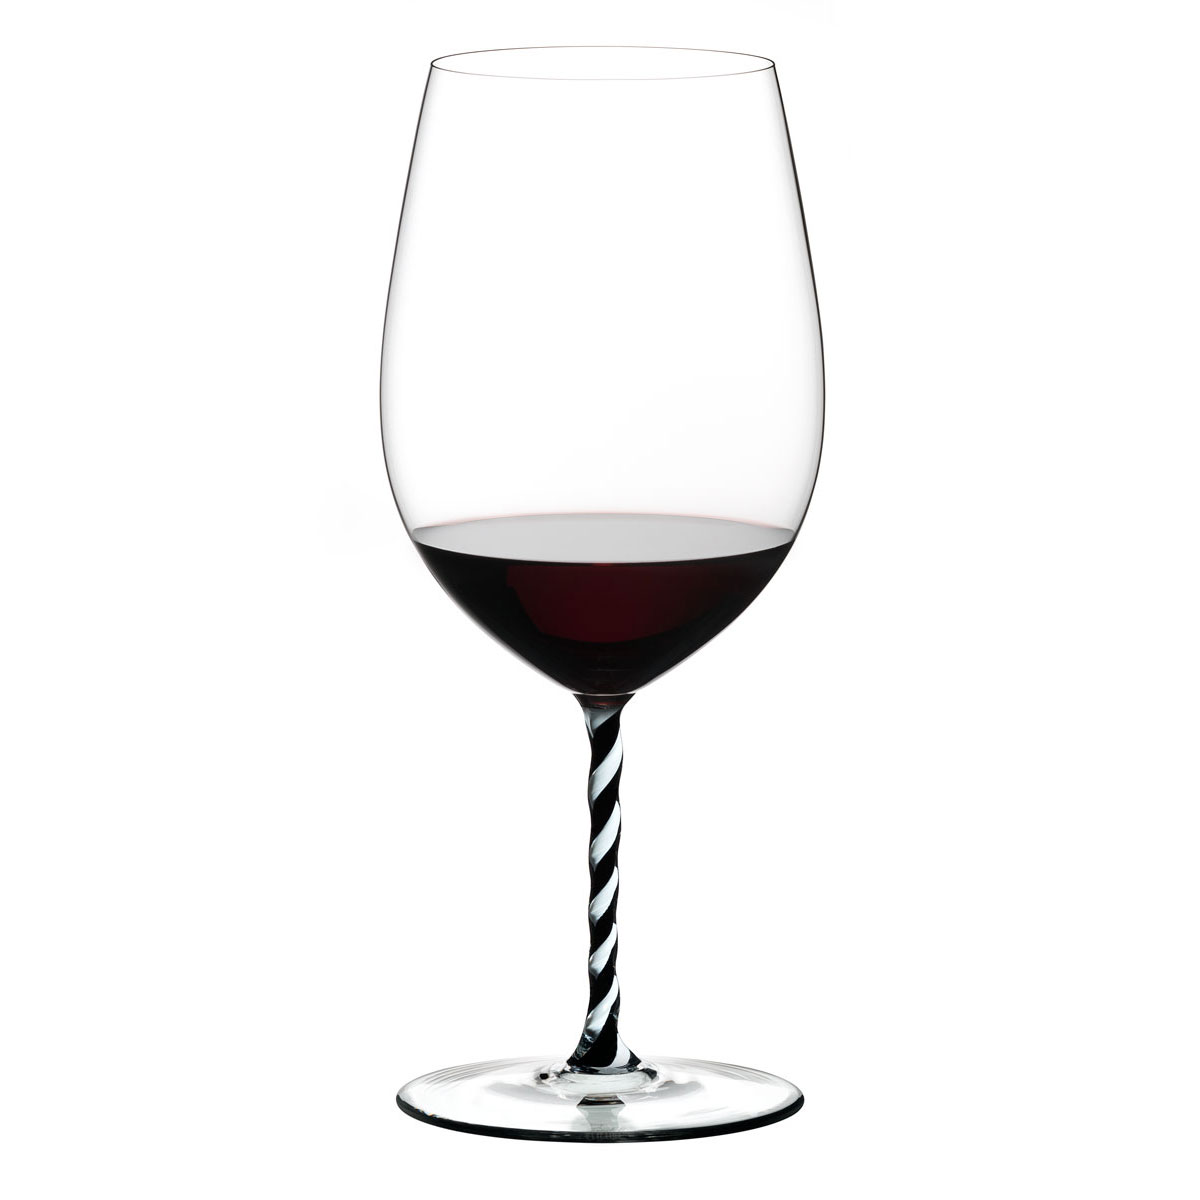 Riedel Fatto A Mano, Cabernet, Merlot, Black and White Twist Wine Glass